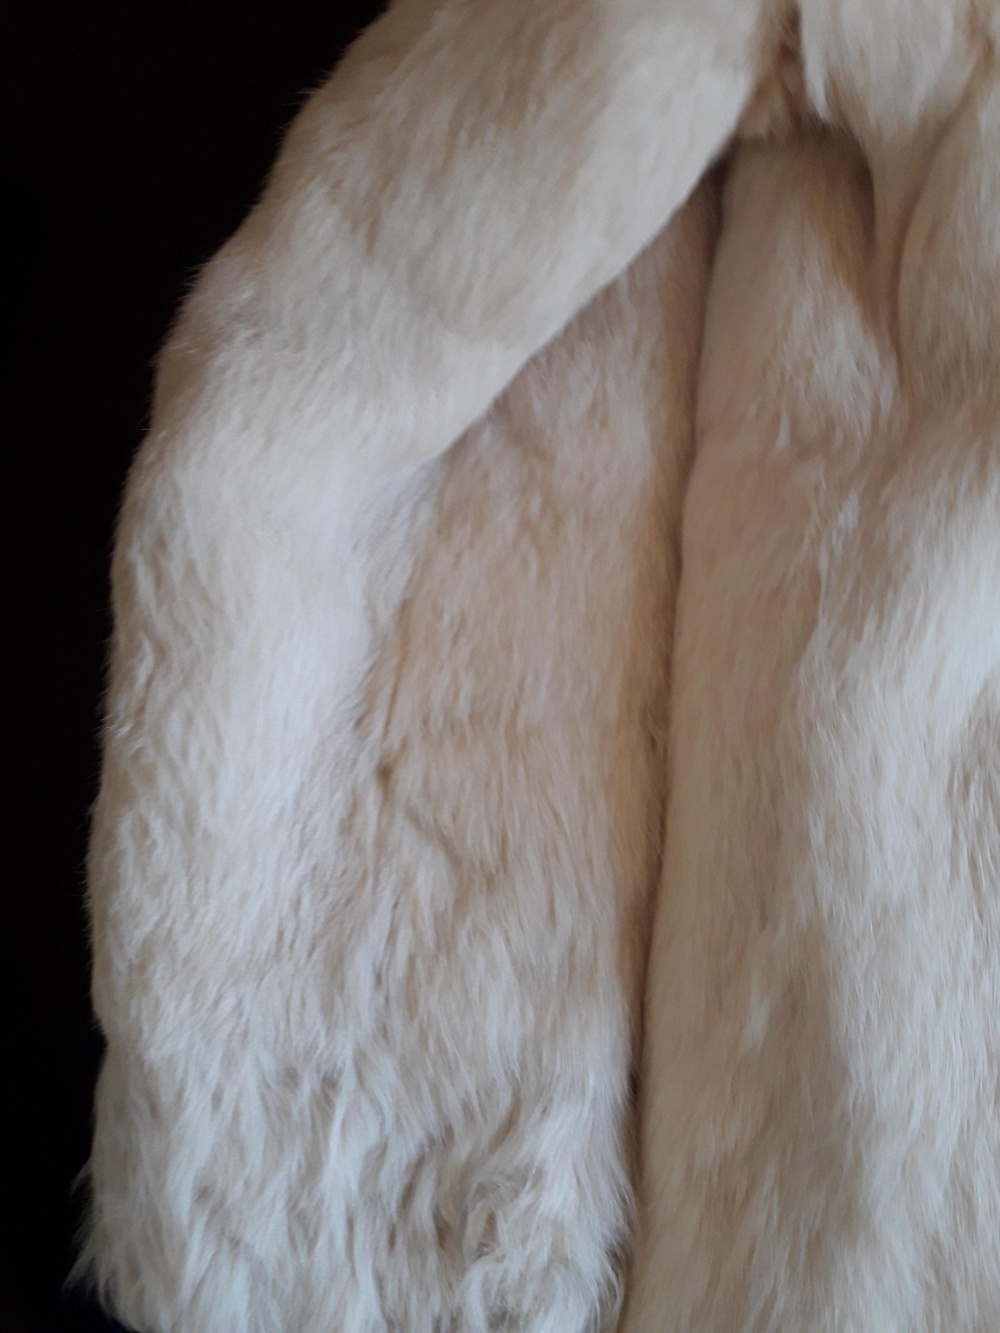 Куртка женская, натуральный мех, размер 44-46